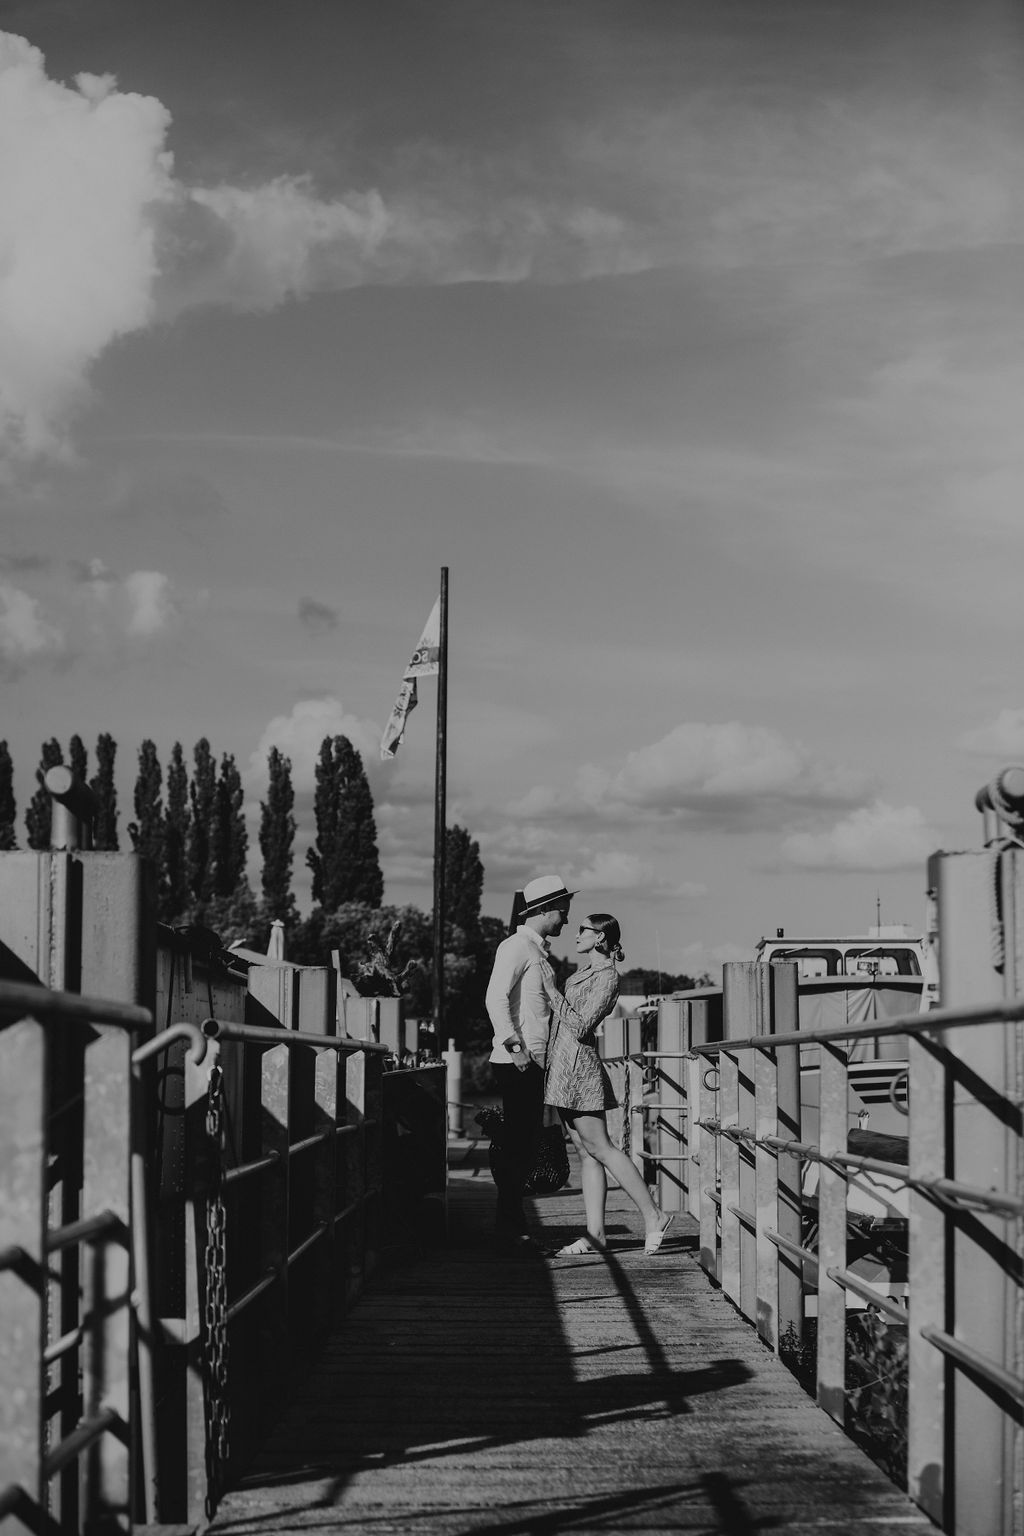 verlobungsshooting in berlin mit hochzeitsfotograf Maria Brussig lensofbeauty Fotos in Gondel Verlobungsfotos in venezianischer Gondel auf der spree Heiratsantrag Ehering Sonnenuntergang an der oberbaumbrücke gondelfox schwarz weiß